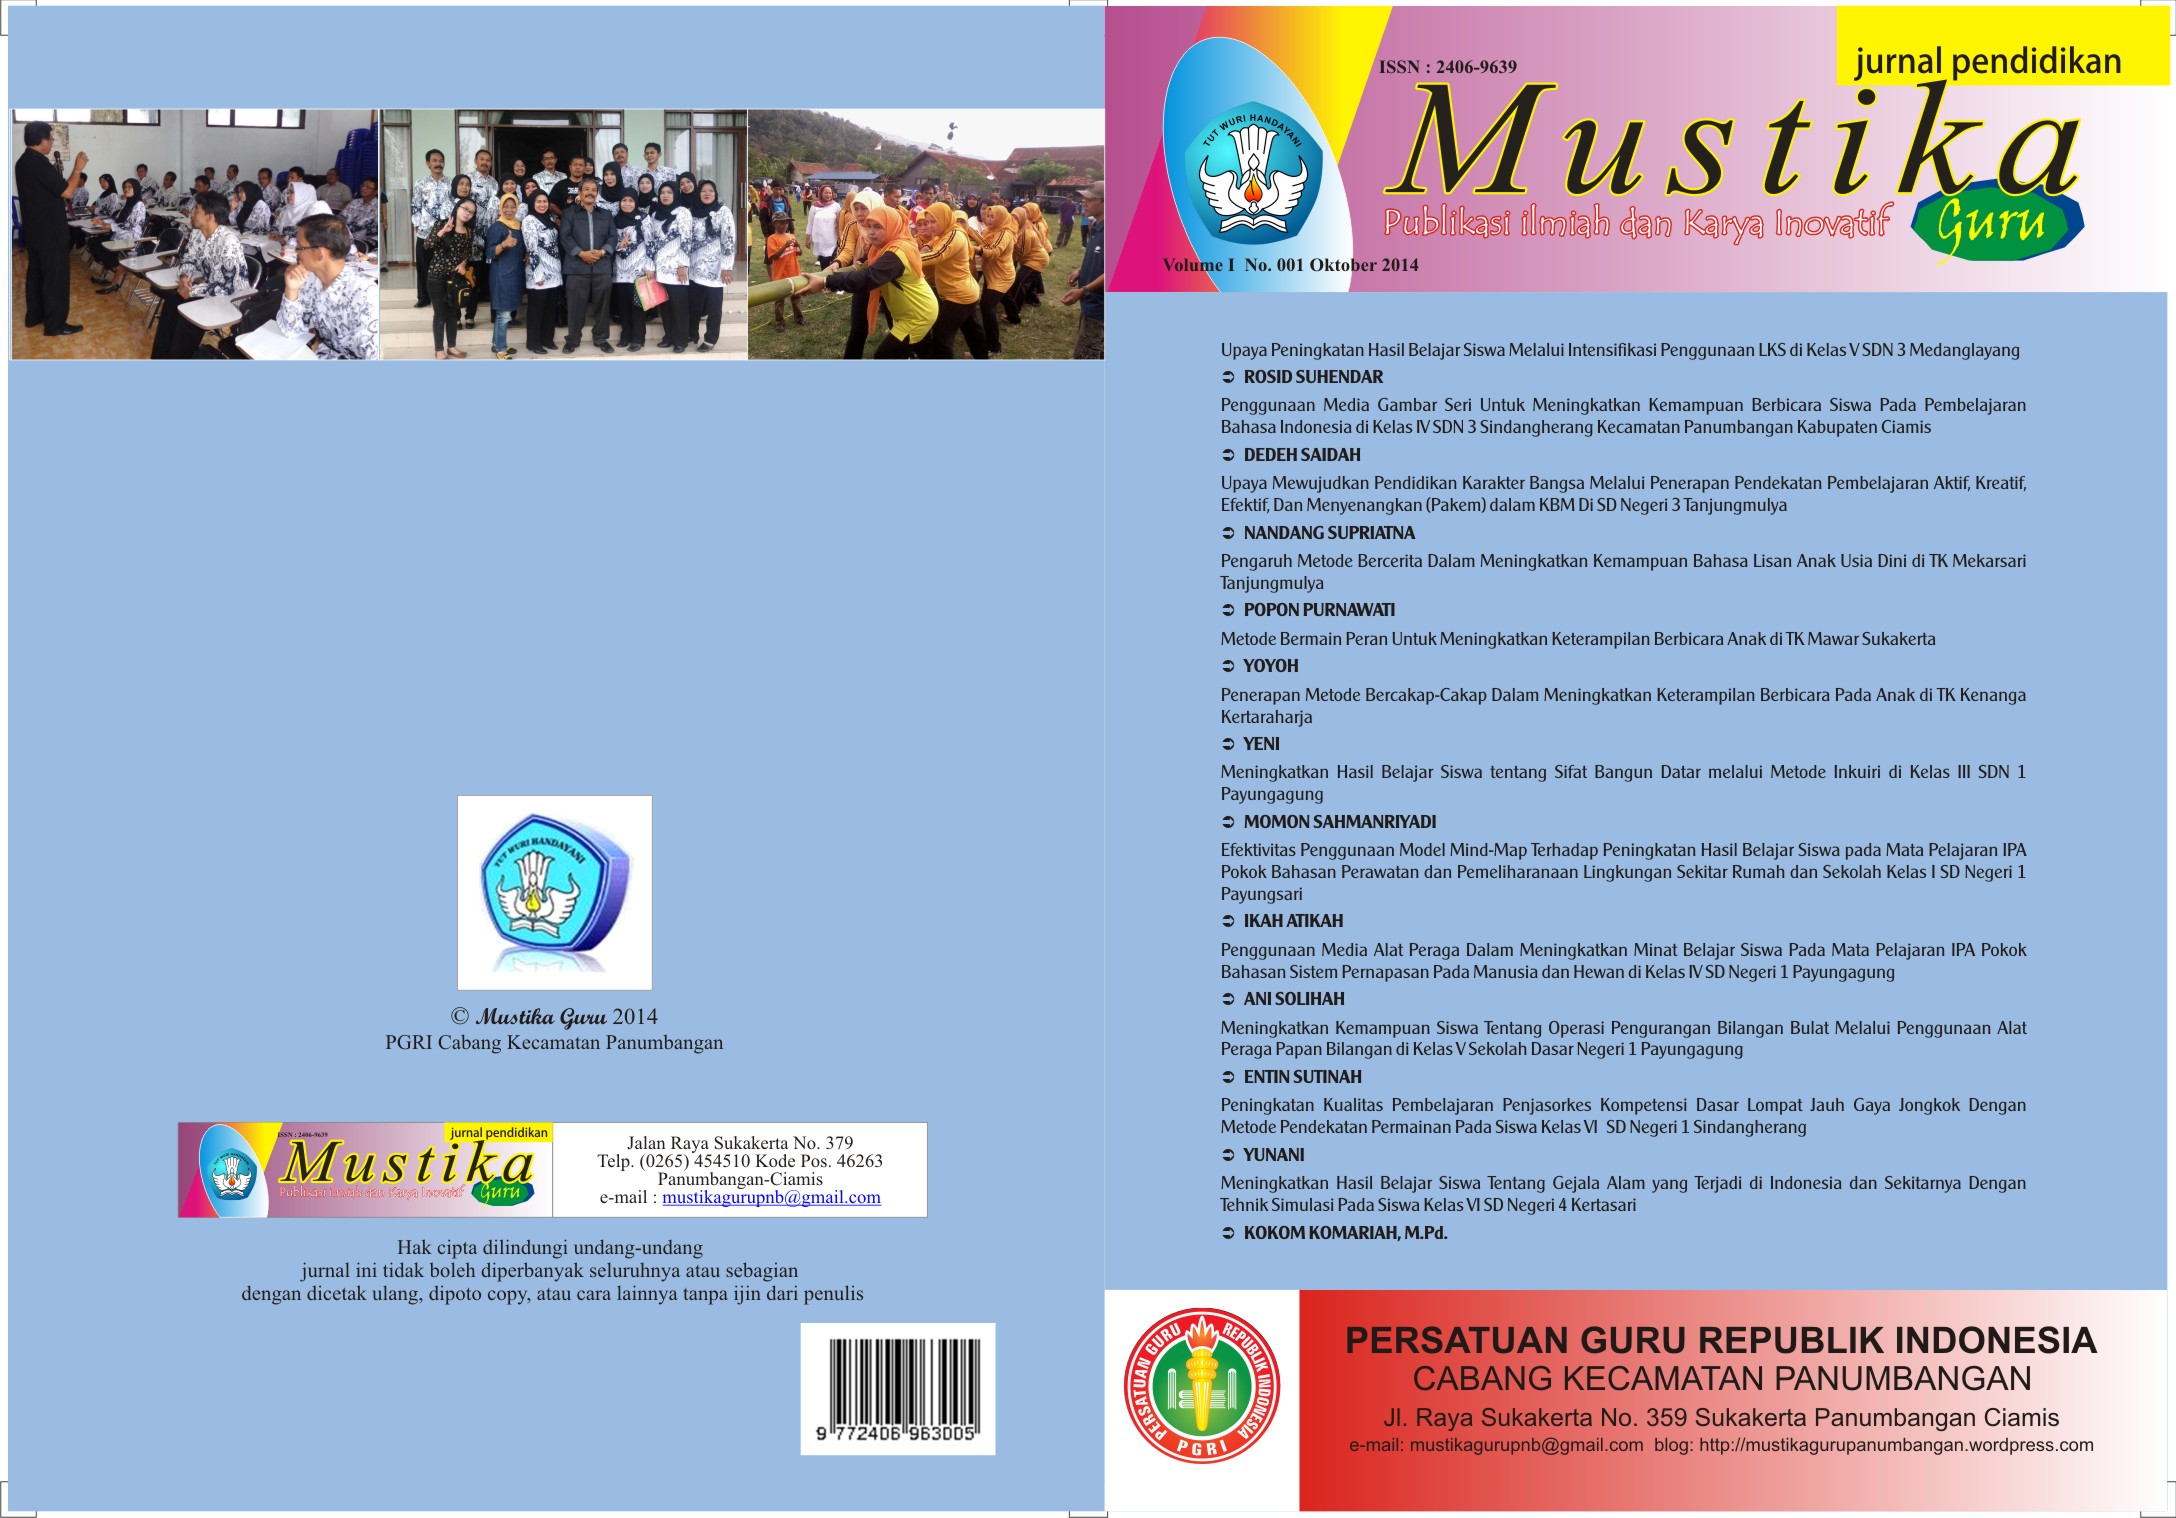 Mustika Guru Volume 1 Edisi 1 Oktober 2014